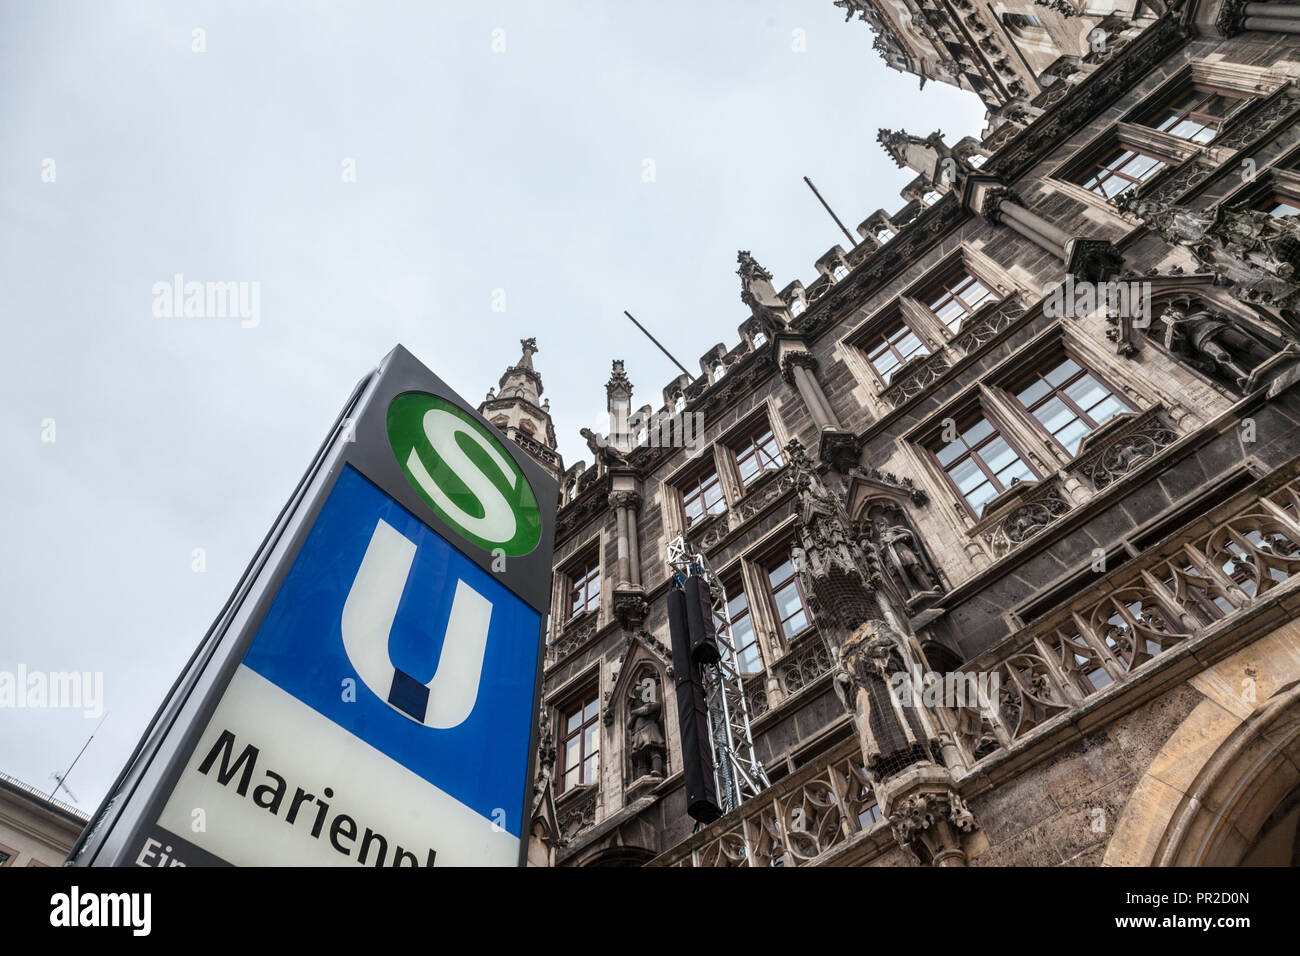 München, Deutschland - Dezember 18, 2017: S-Bahn und U-Bahn Zeichen auf ihren Eingang auf den Marienplatz, das Wahrzeichen von München. SBahn & U-Bahn sind die u-bahn Stockfoto